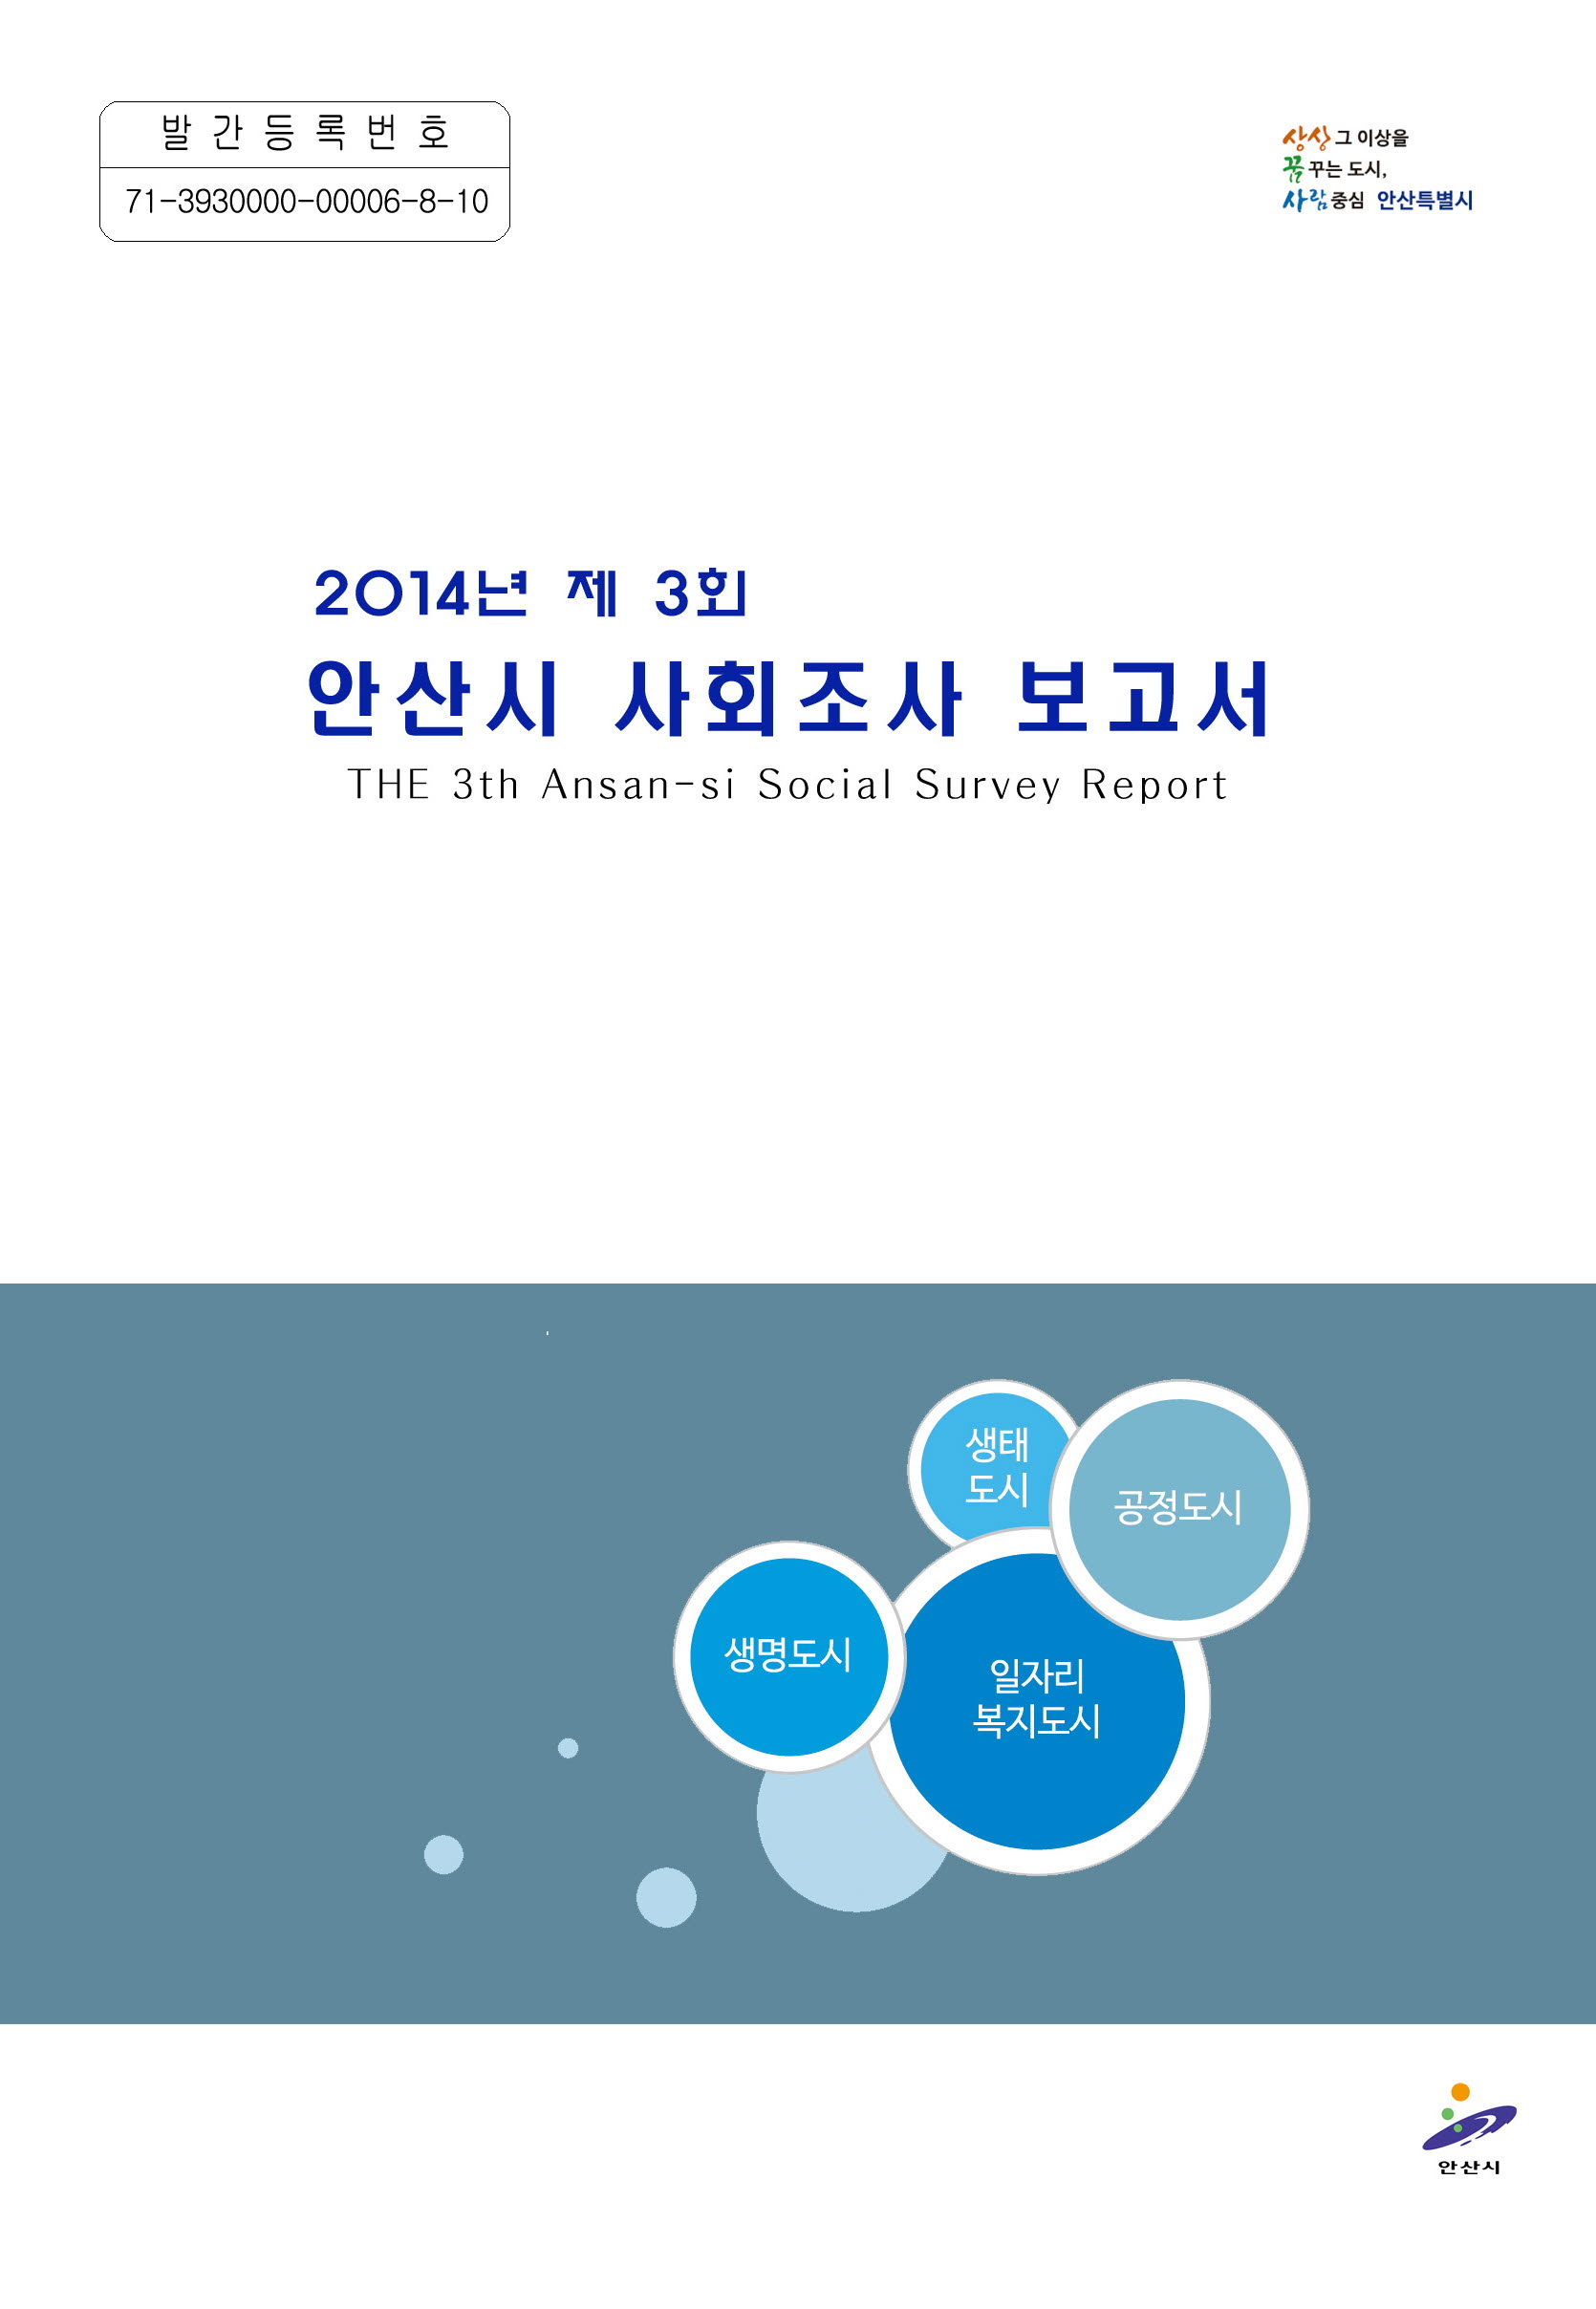 2014년 제3회 사회조사보고서 사진